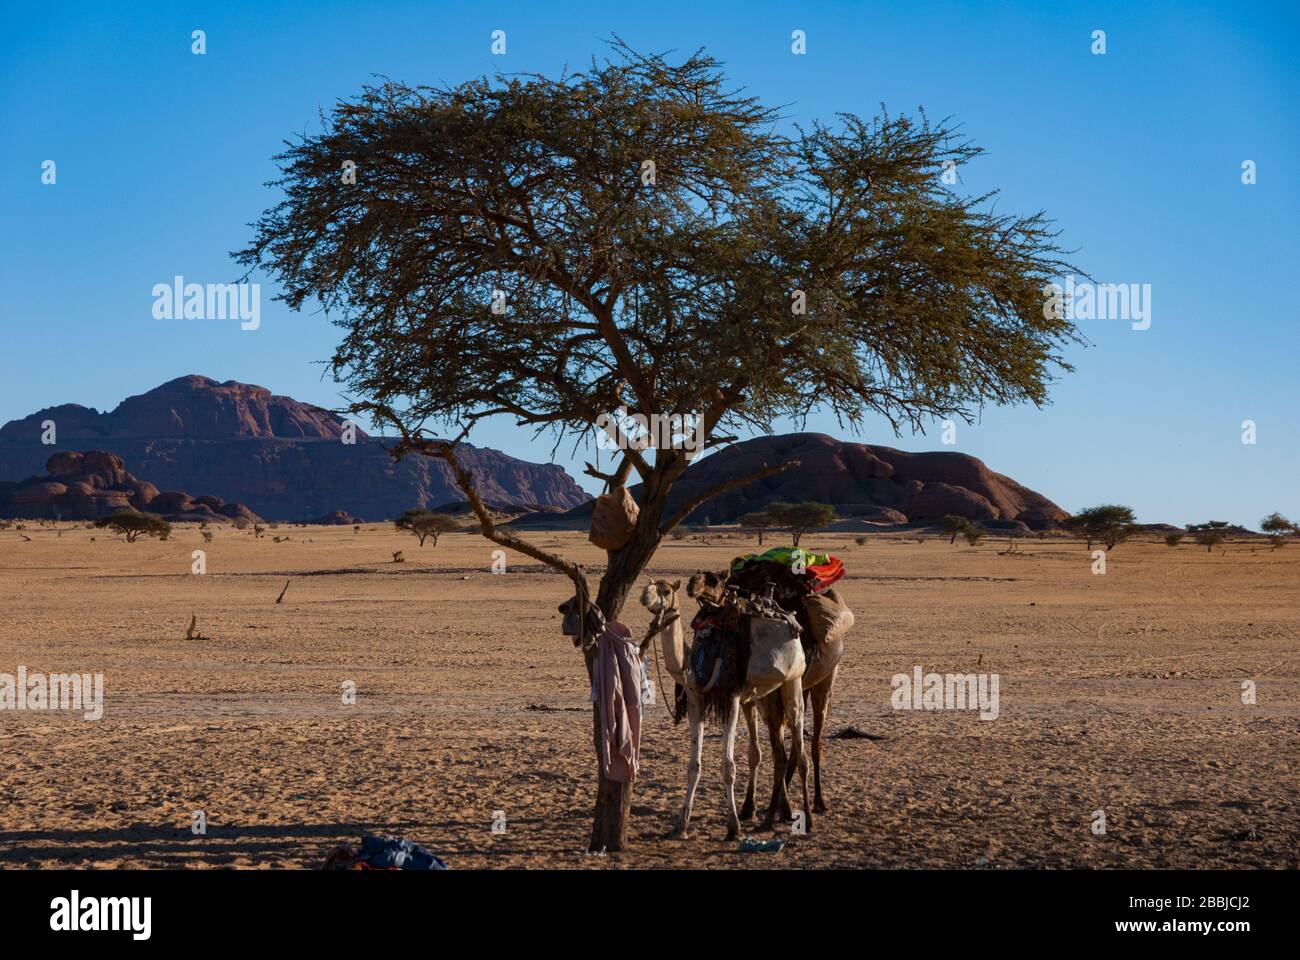 Oasis, désert du Sahara au Tchad. Deux chameaux se dresse à côté de l'arbre. Afrique Banque D'Images